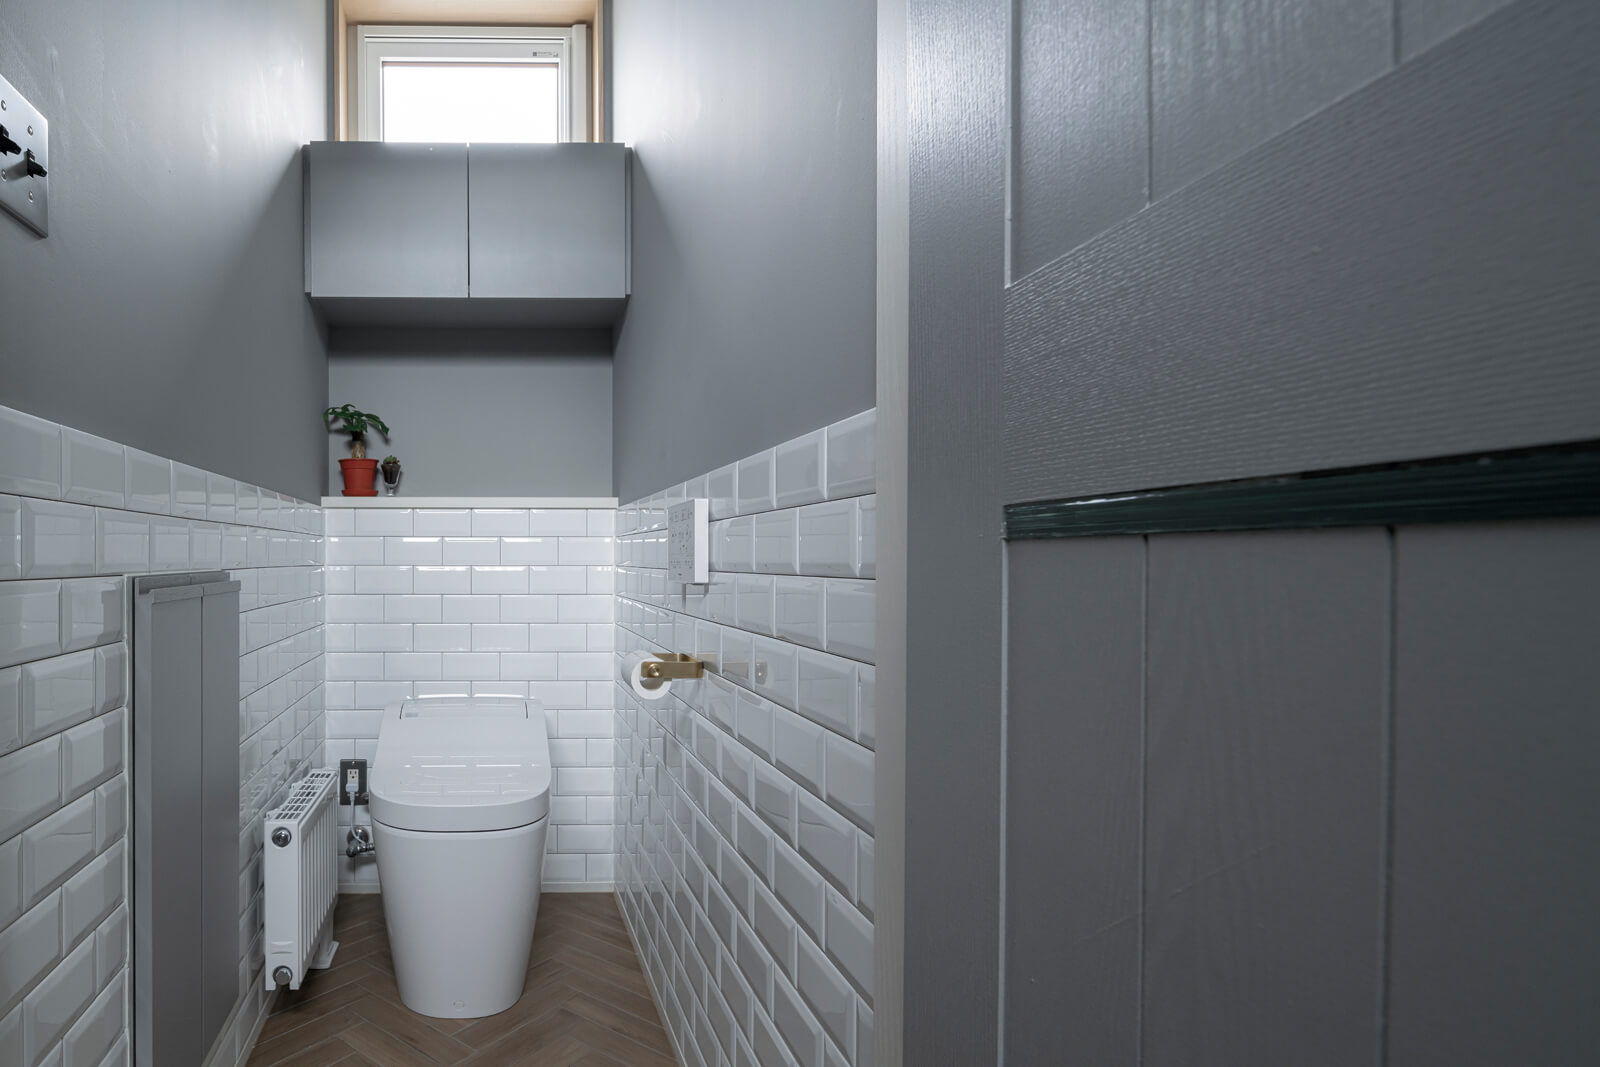 グレーのペイントに白いサブウェイタイルを合わせたトイレ。ヘリンボーン柄に施工した床タイルと真鍮のホルダーでインダストリアルな雰囲気に